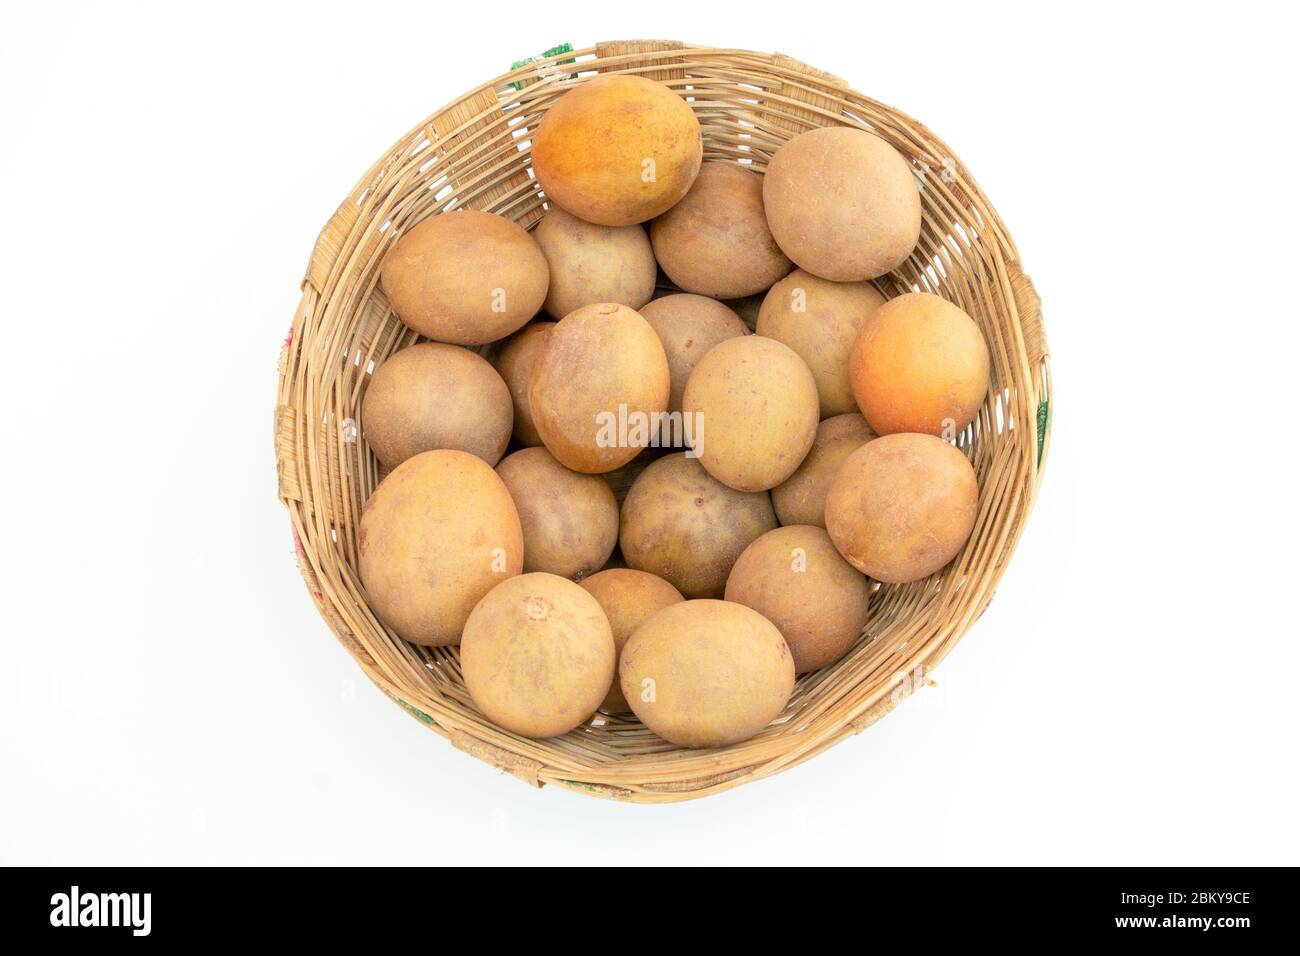 Chikoo or sapodilla fruit isolated on white background Stock Photo